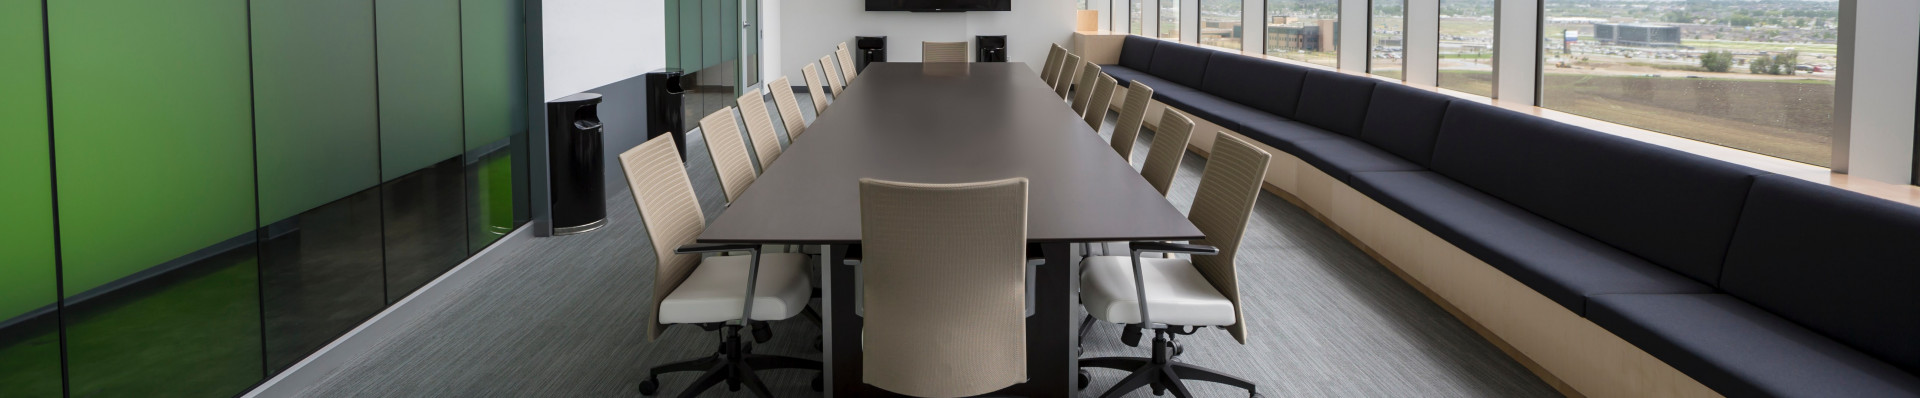 Lahendused kontorisse ja kodukontorisse Seisukist - reguleeritavad lauad, ergonoomilised toolid, akustilised paneelid, koosolekulauad, kapid jpm.